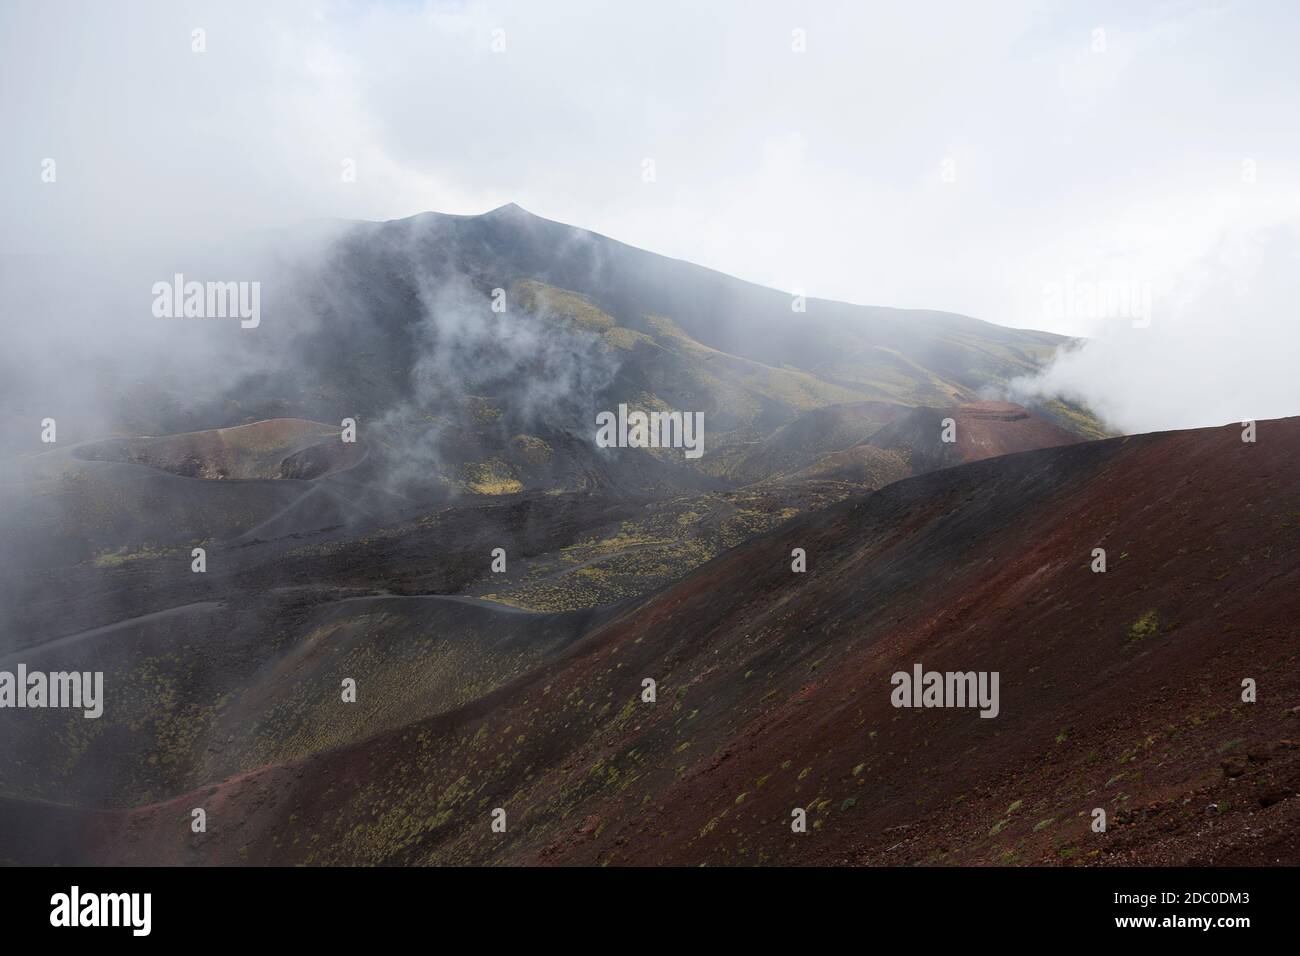 Sicilia, Italia. Spettacolare scenario sulle colline dell'Etna, vista dal bordo del cratere Silvestri superiore. Foto Stock